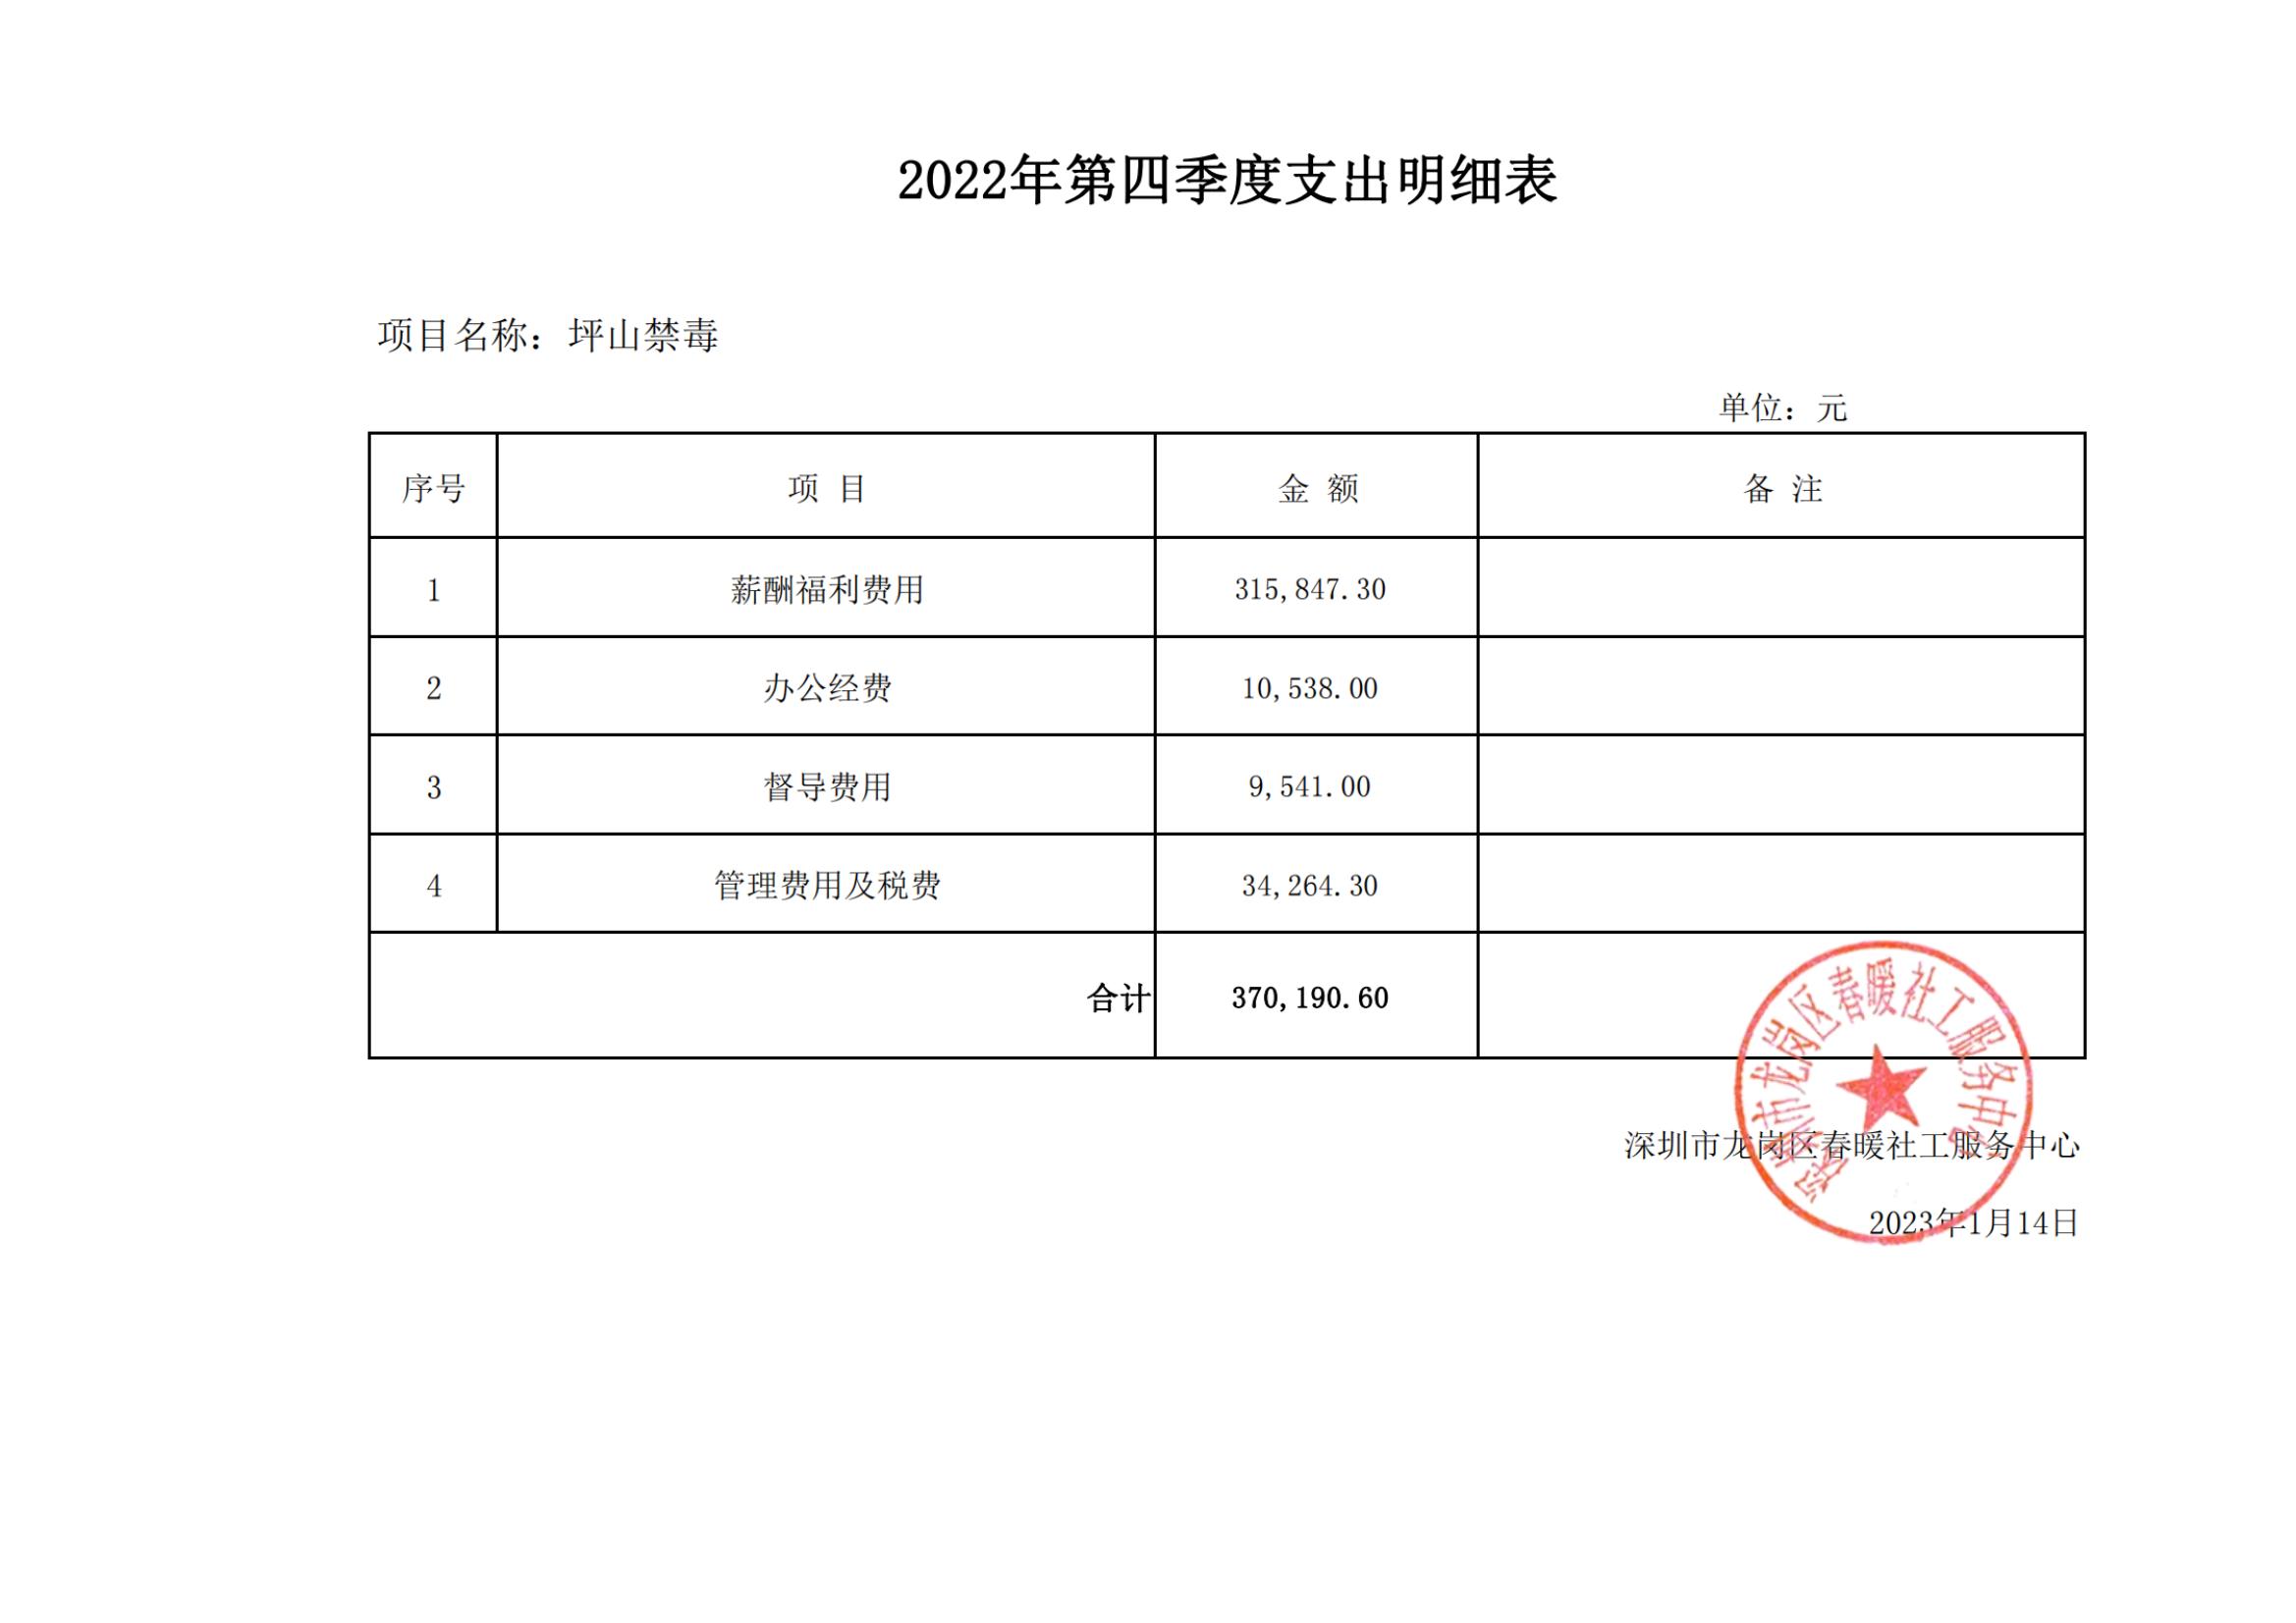 深圳市公安局坪山分局缉毒社工服务项目2022年第四季度支出明细表